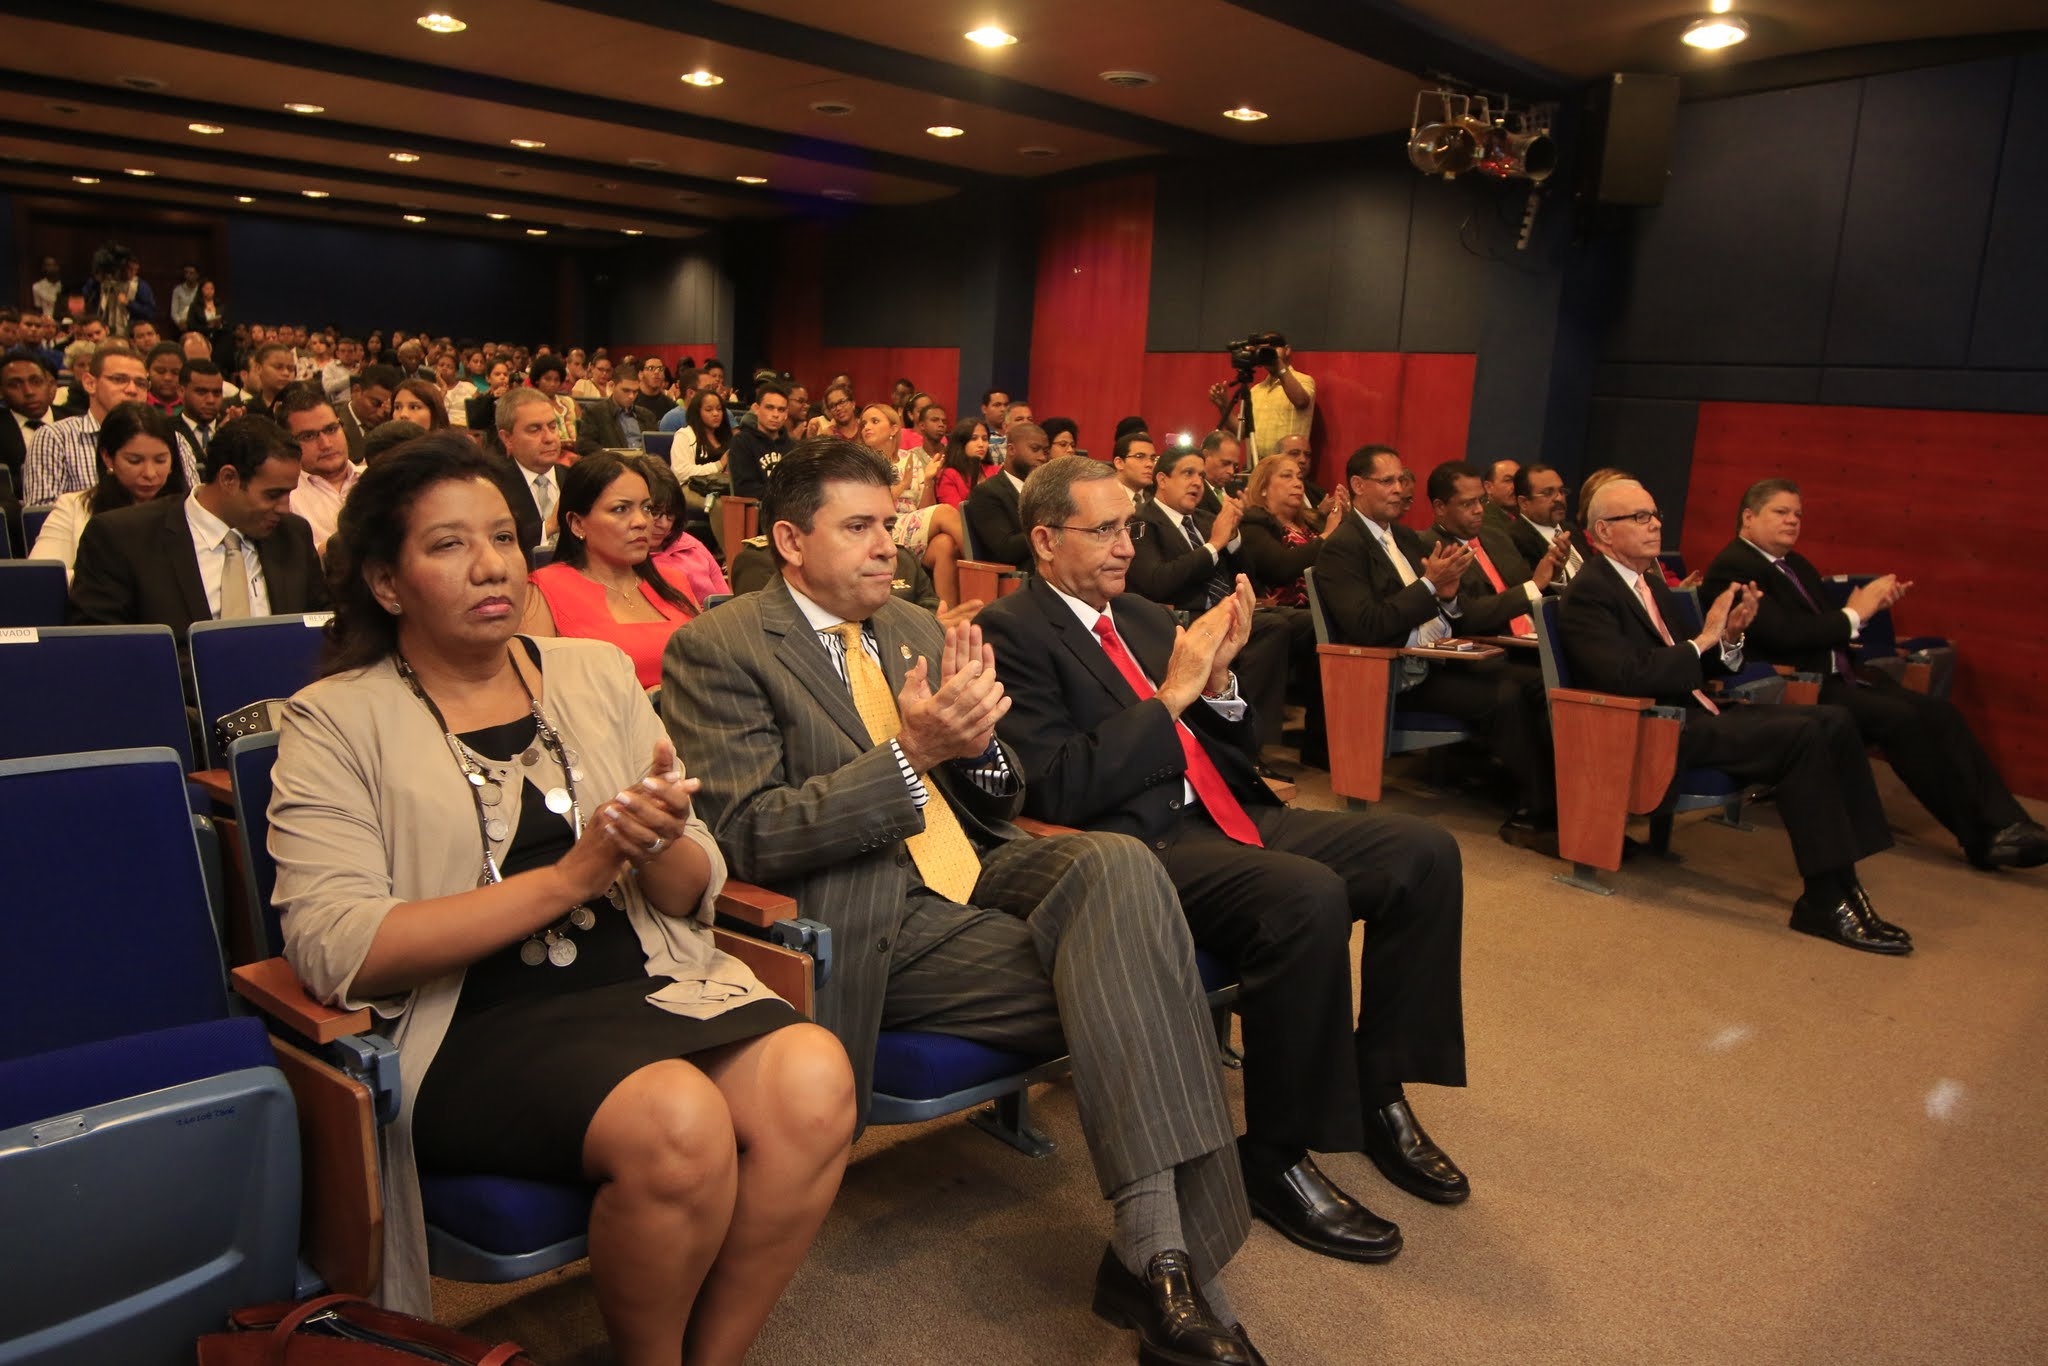 La actividad fue realizada en el Auditorio Dr. Leonel Rodríguez Rib, ubicado en el Campus Principal de UNAPEC.